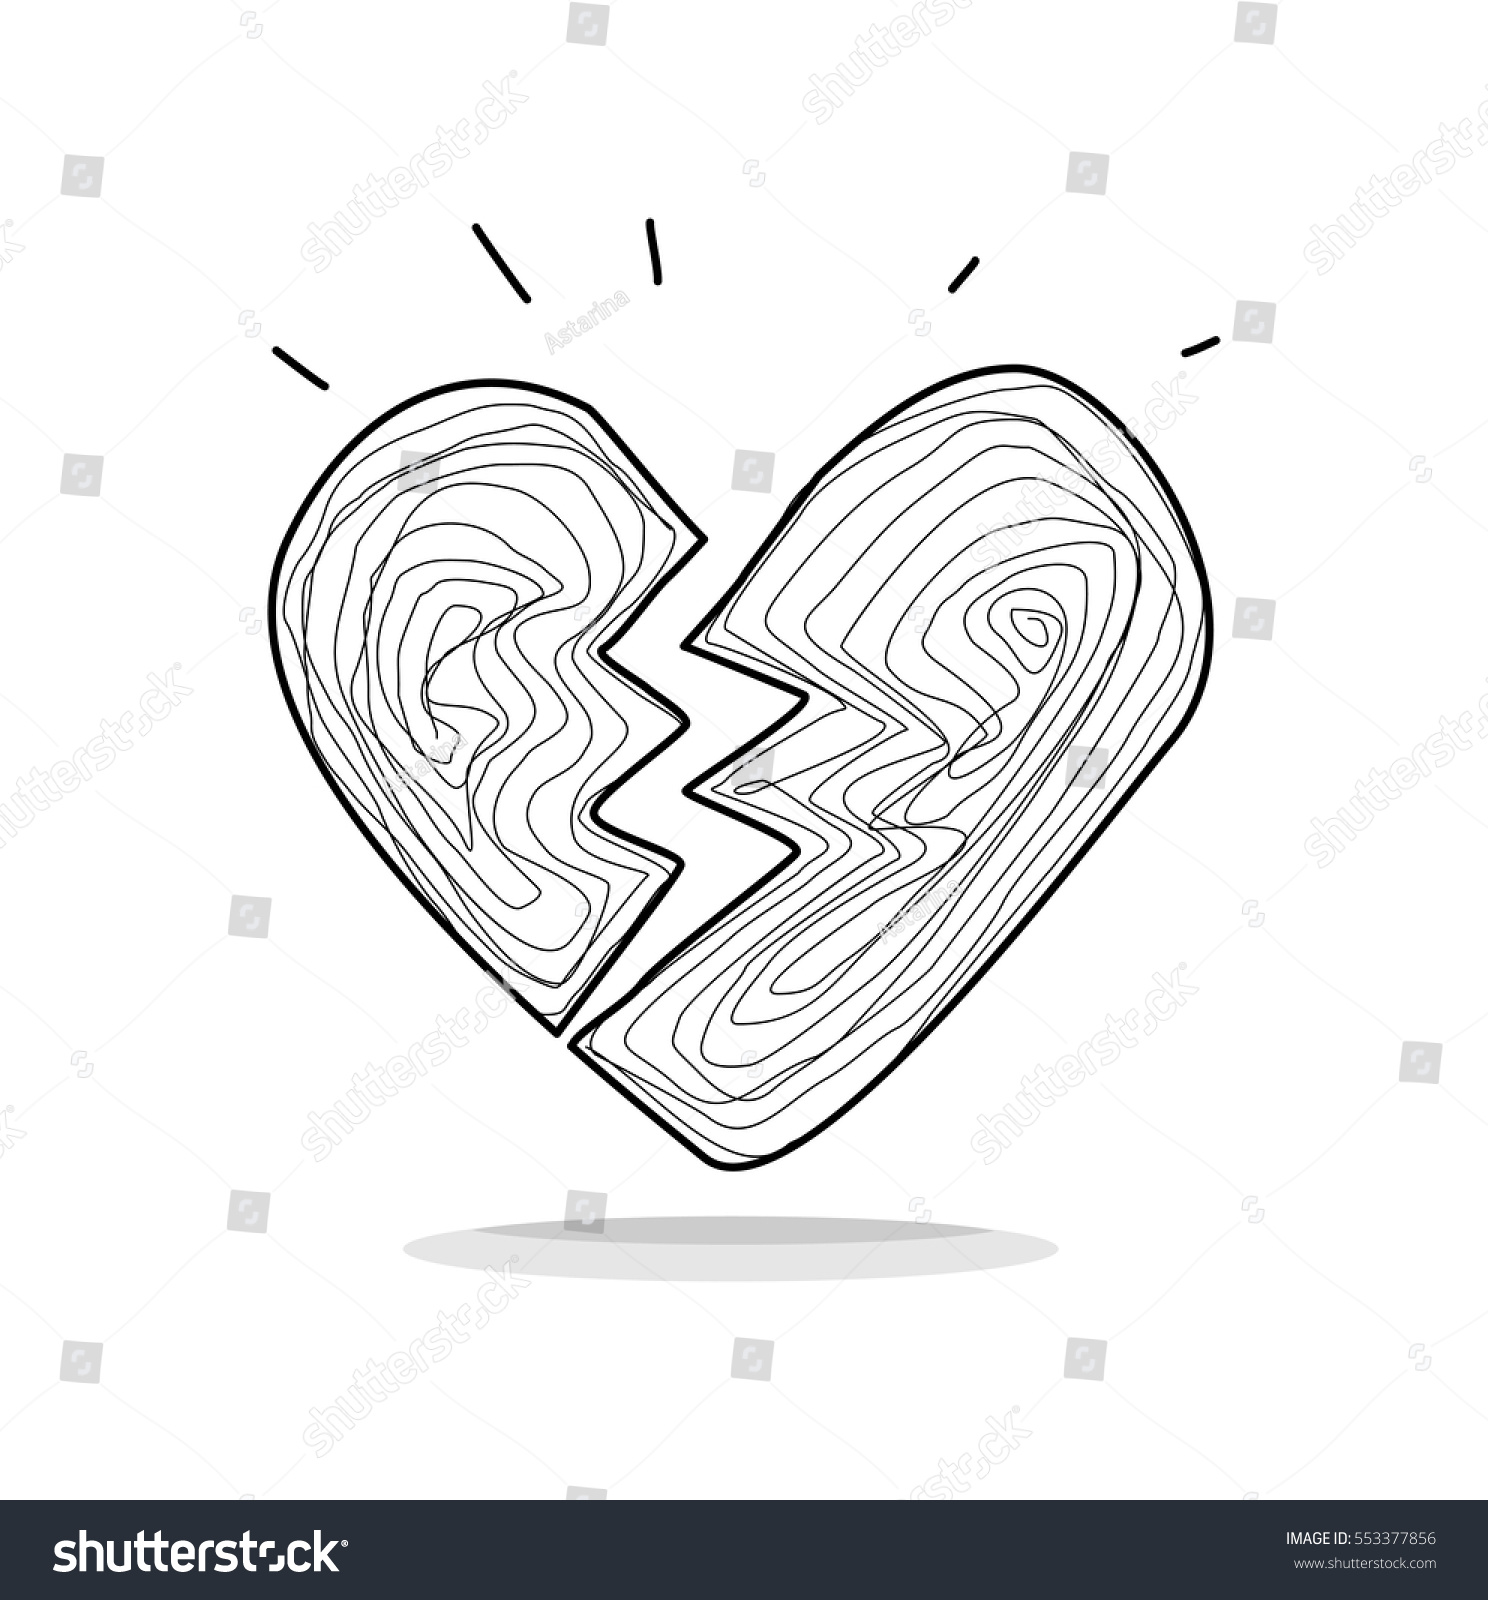 Broken Heart Doodle Stock Vector Royalty Free 553377856 Shutterstock